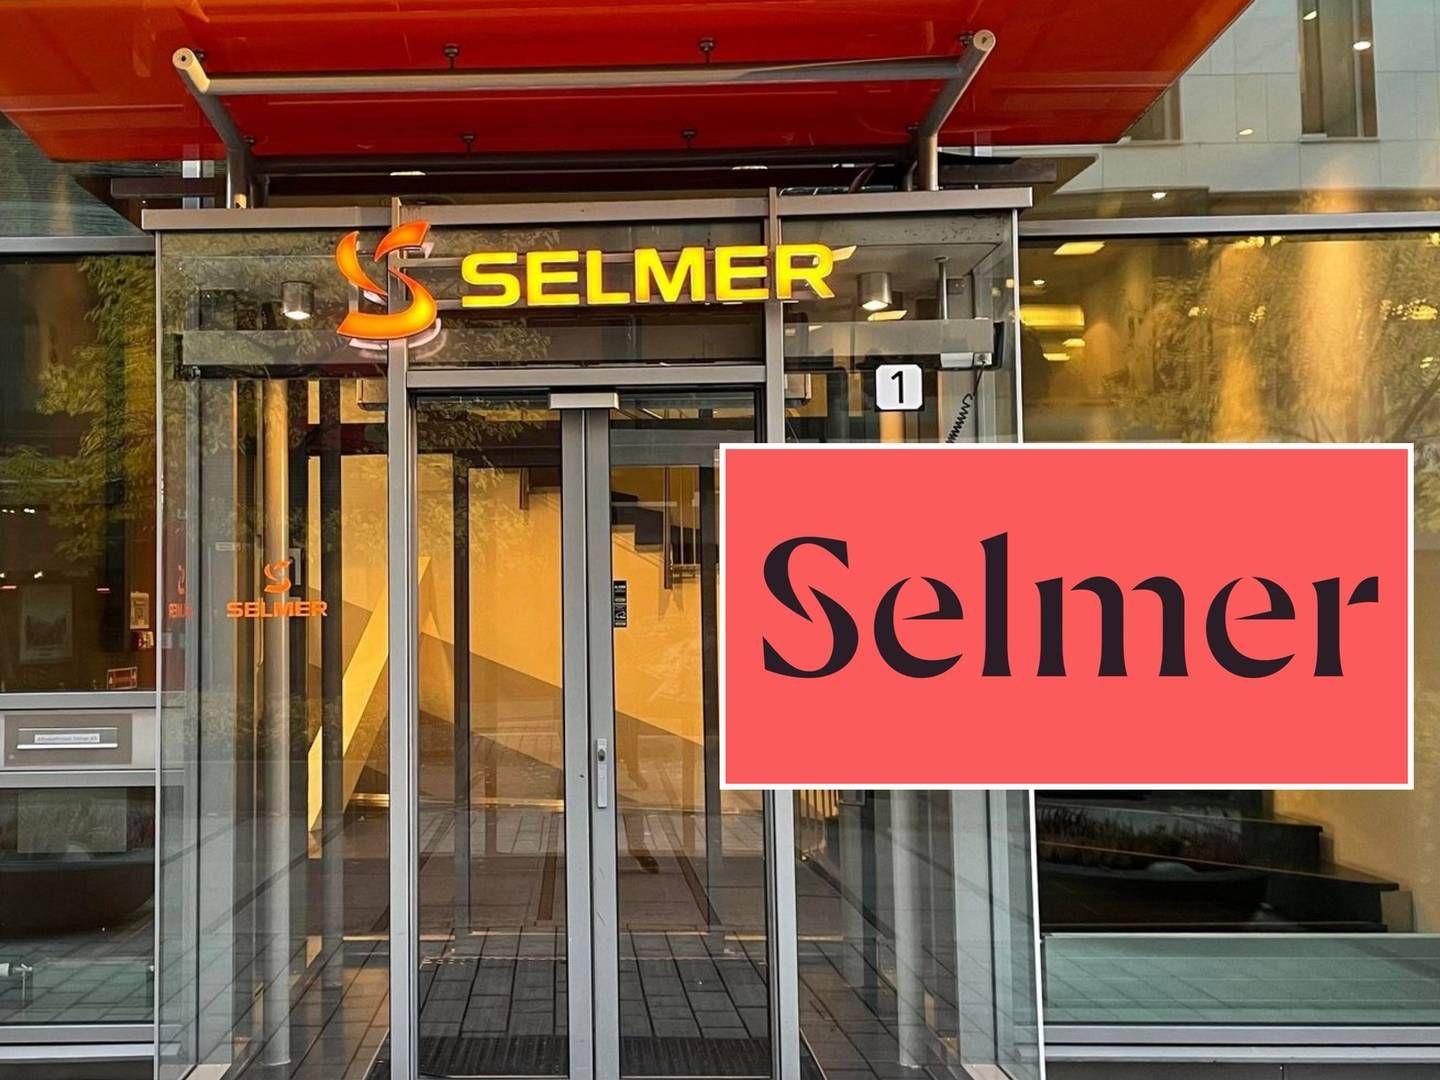 NY PROFIL: Den oransje logoen til Selmer byttes nå ut med nye farger og logo. | Foto: Stian Olsen/Selmer